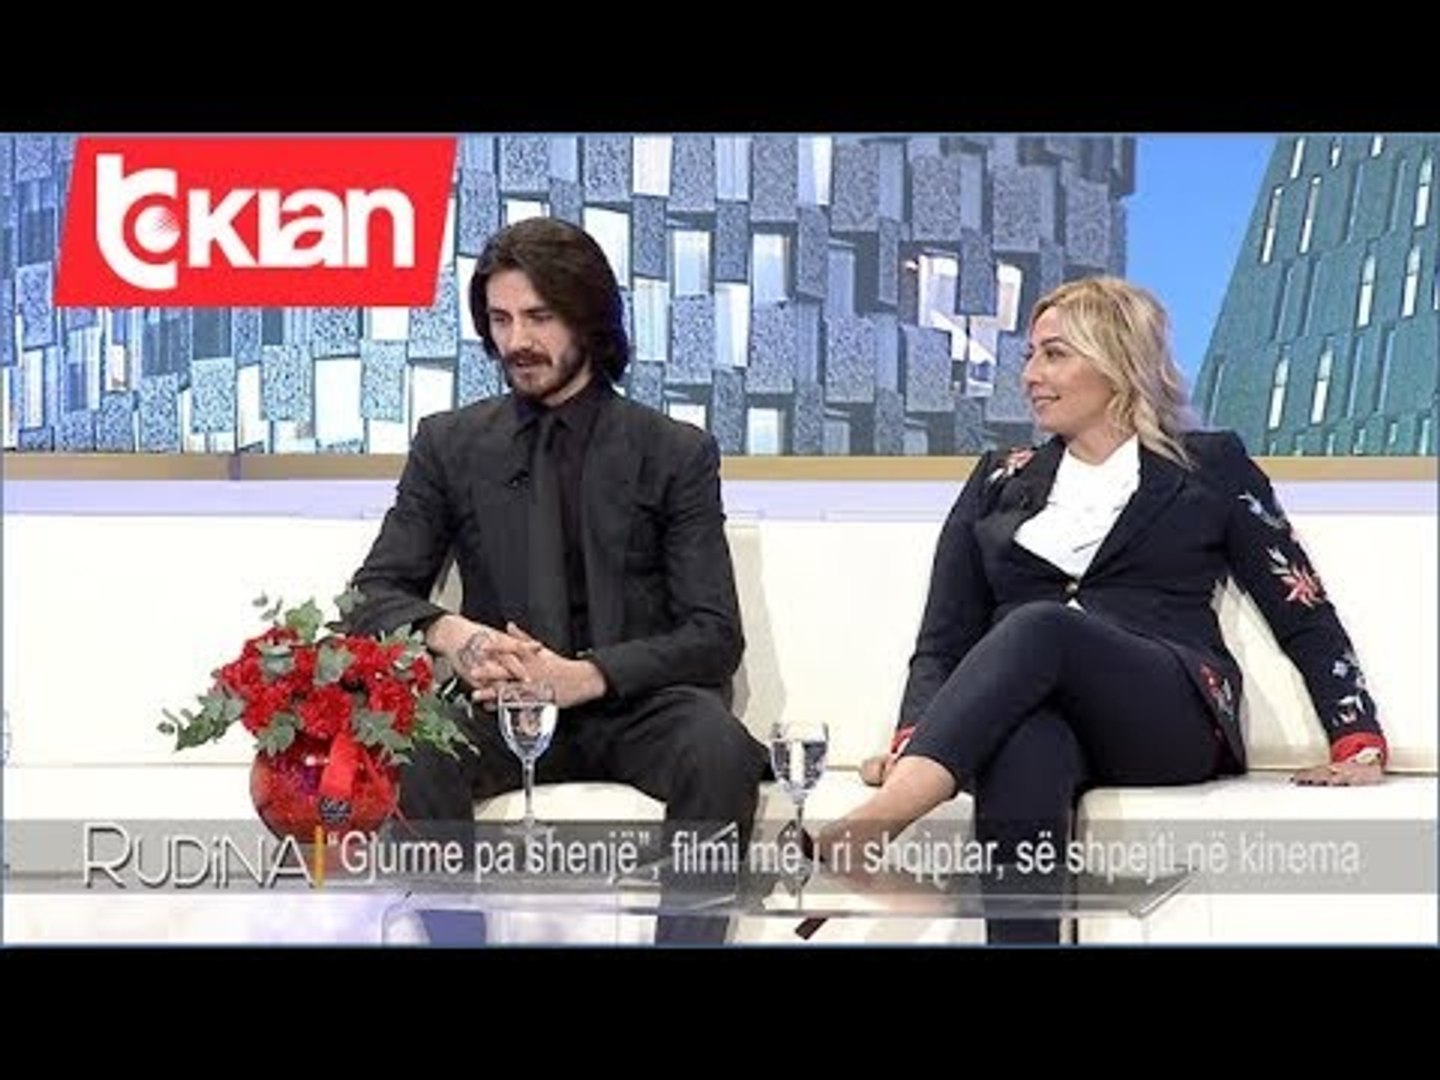 Rudina - “Gjurme pa shenje”, filmi me i ri shqiptar, se shpejti ne kinema! (10 shkurt 2020)